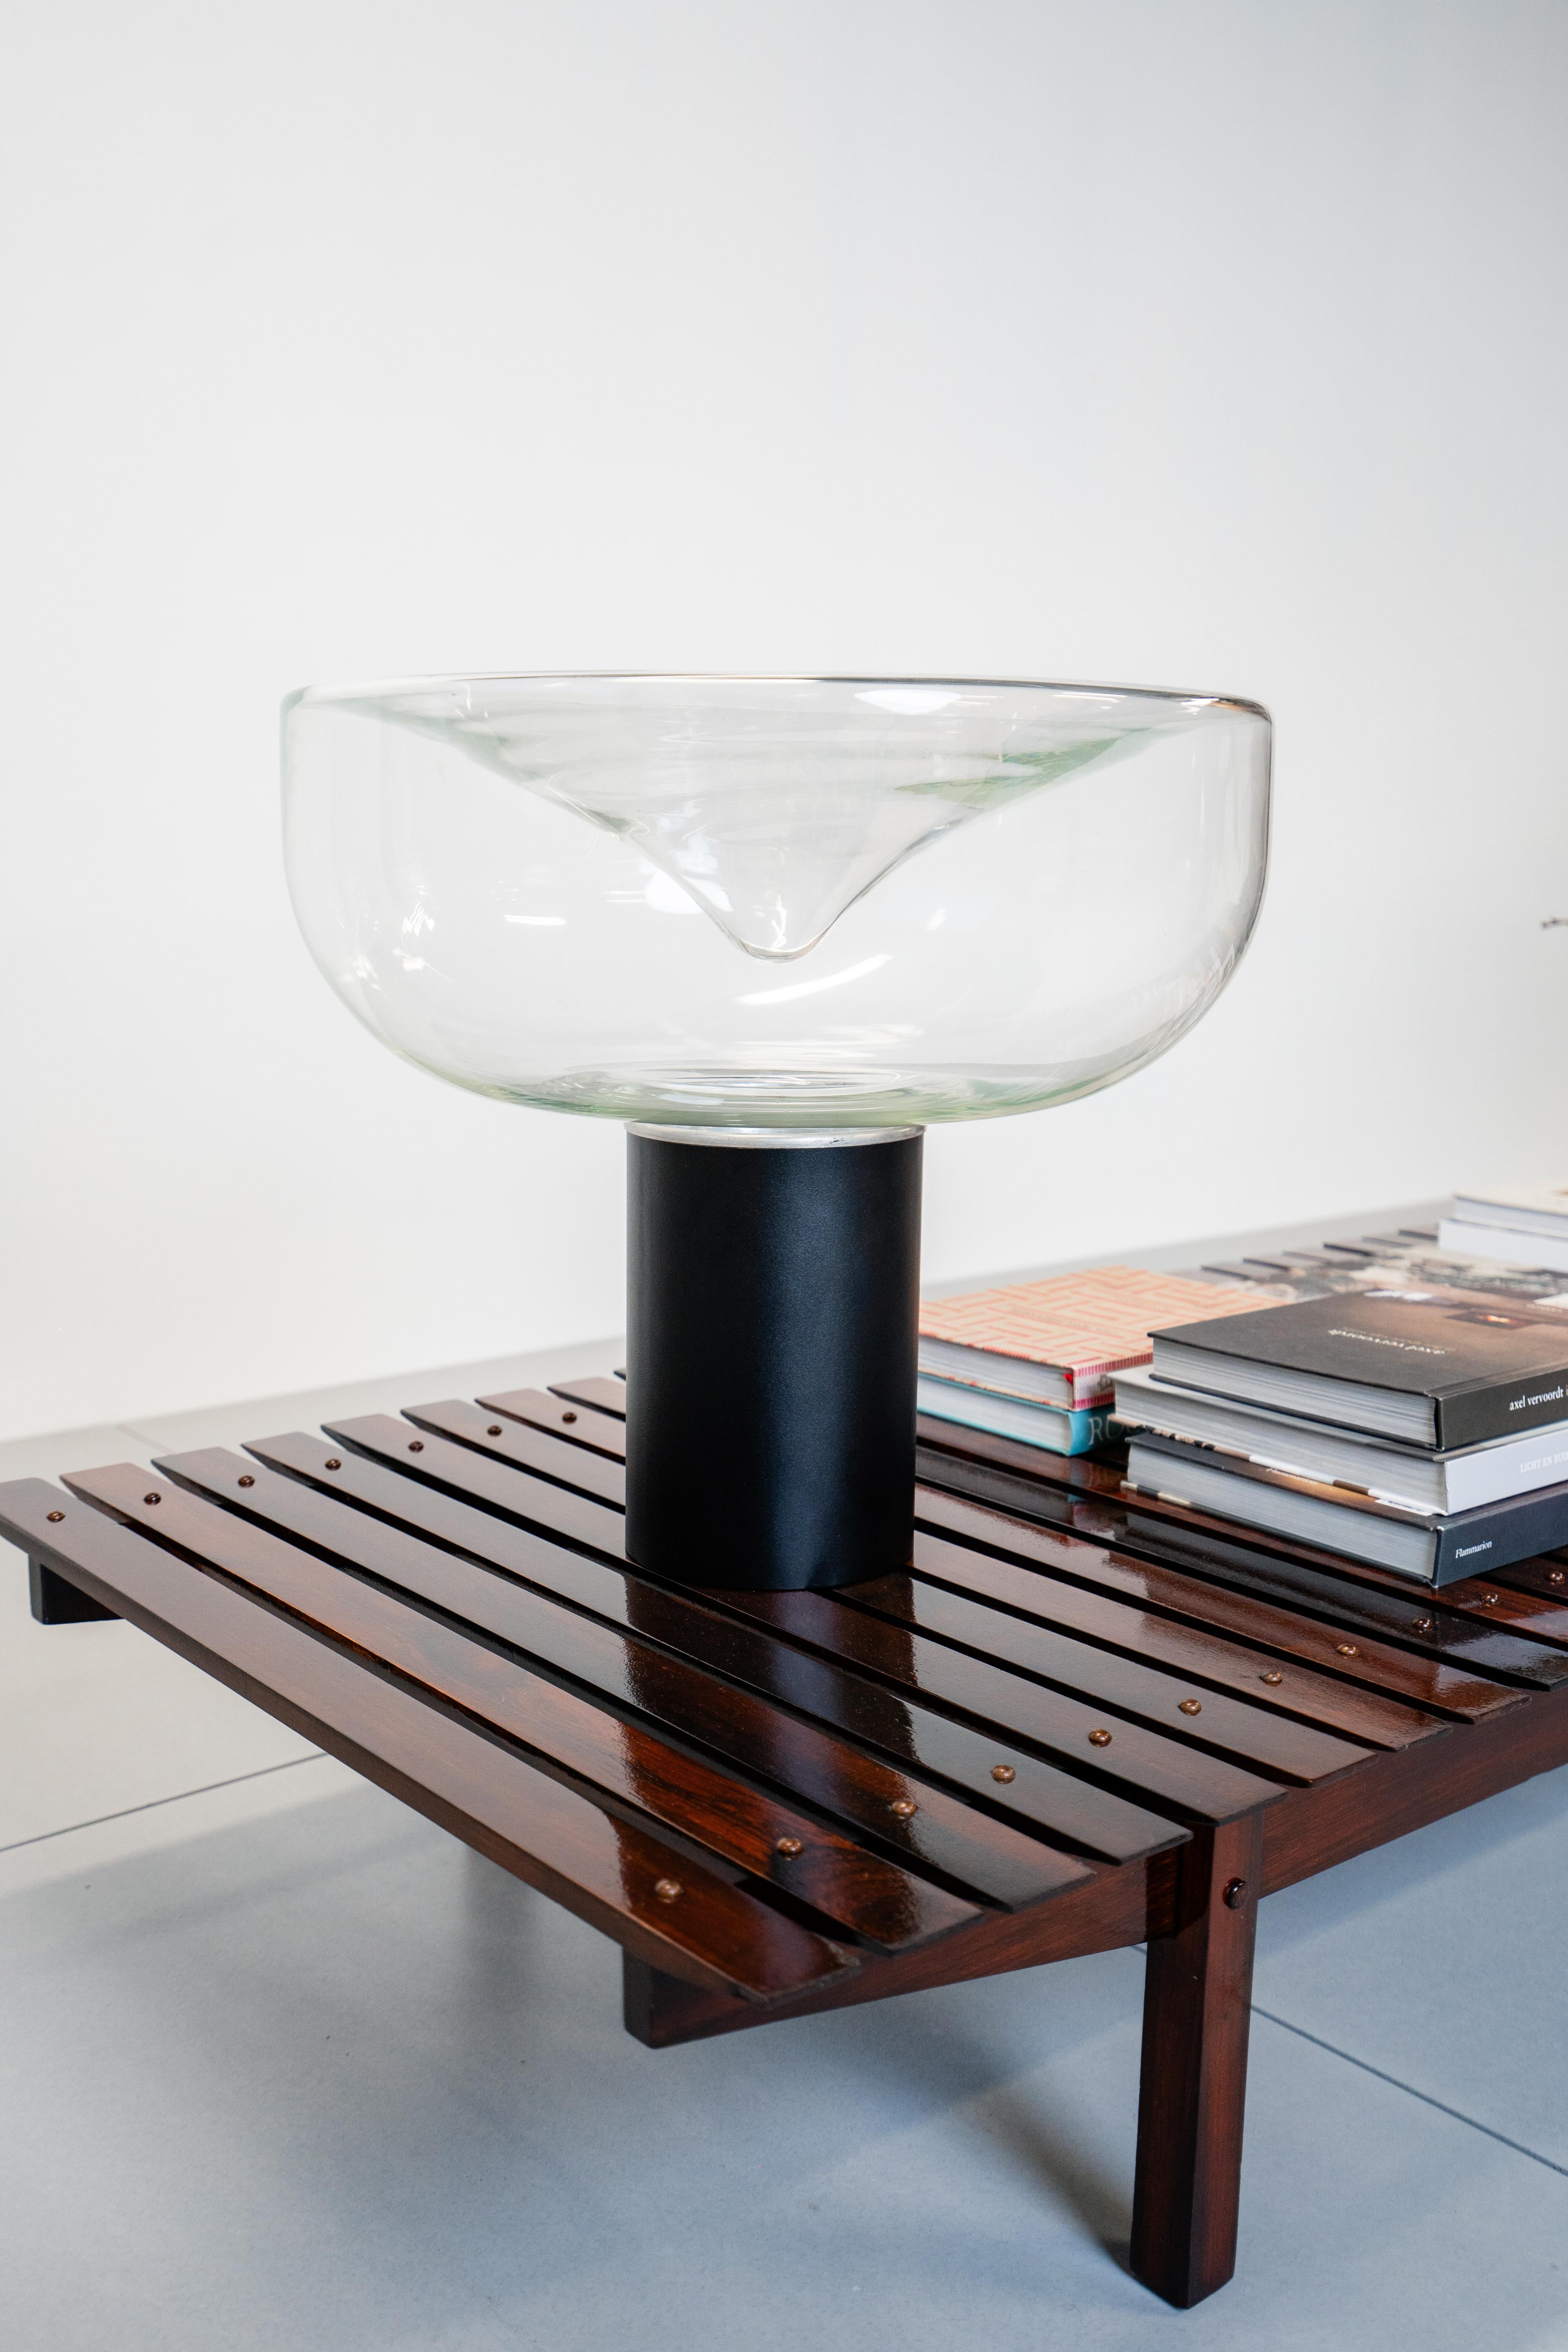 Lampe de table mod. Aella conçue par Renato Toso et Giovanna Noti Massari en 1966.
Base en aluminium peint, abat-jour en verre soufflé, grande version.
Nommée d'après une amazone mythologique, cette importante lampe à poser historique de Leucos